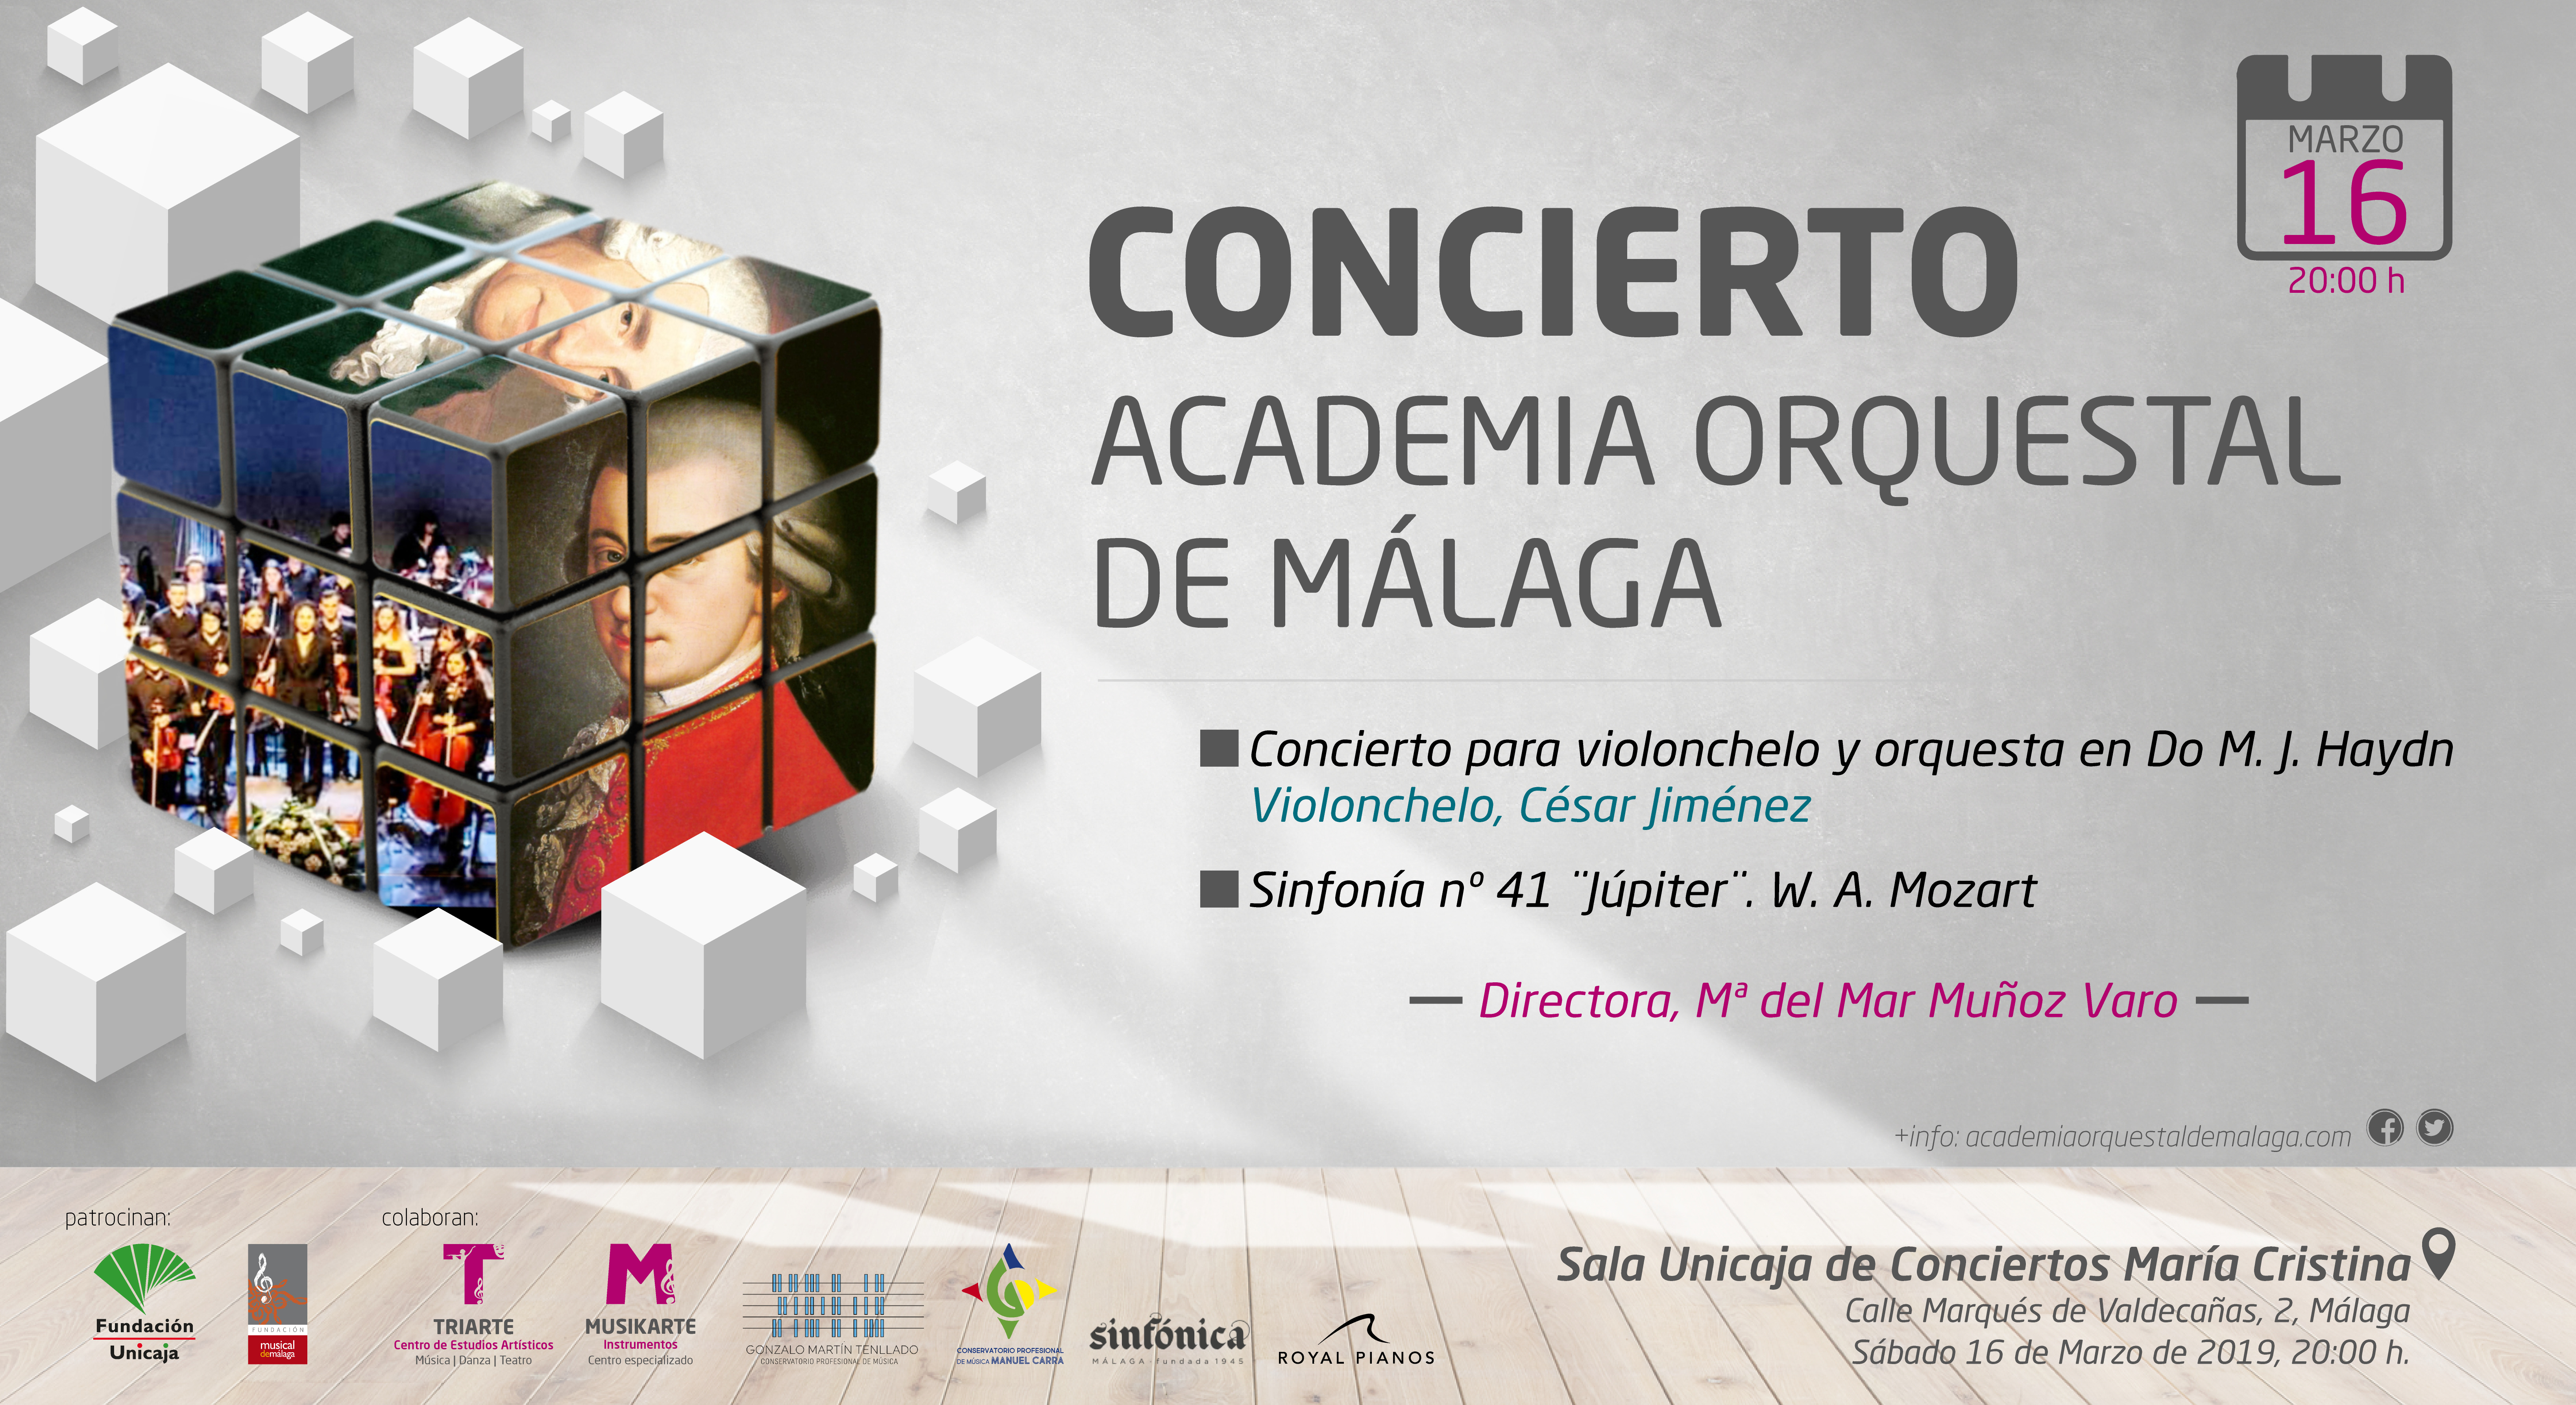 Concierto Academia Orquestal de Málaga. Marzo 2019. Sala Unicaja de Conciertos María Cristina.